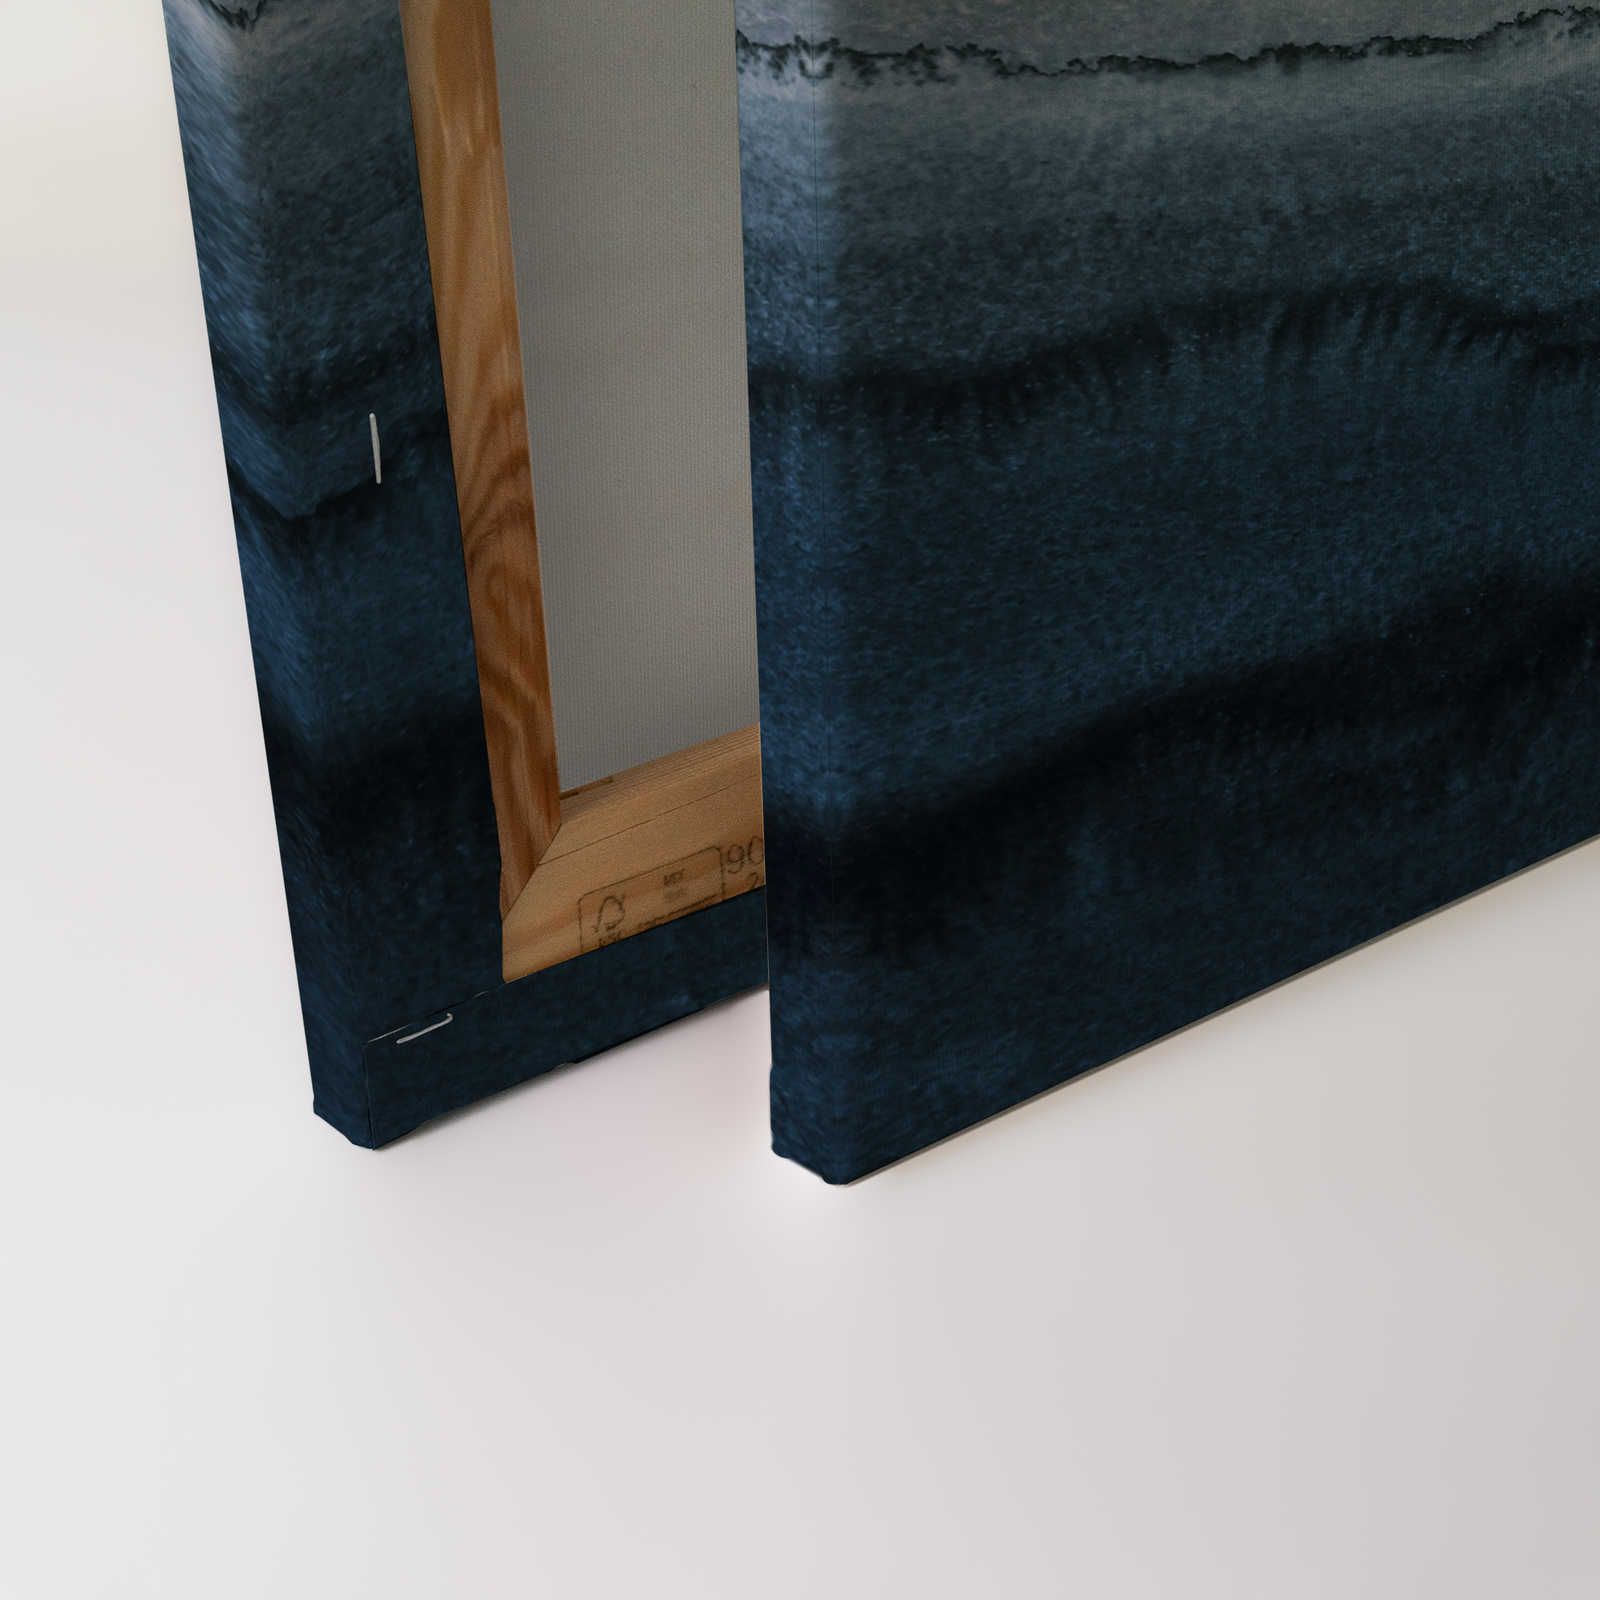             Leinwandbild Gezeiten im minimalistischen Aquarell Stil – 0,90 m x 0,60 m
        